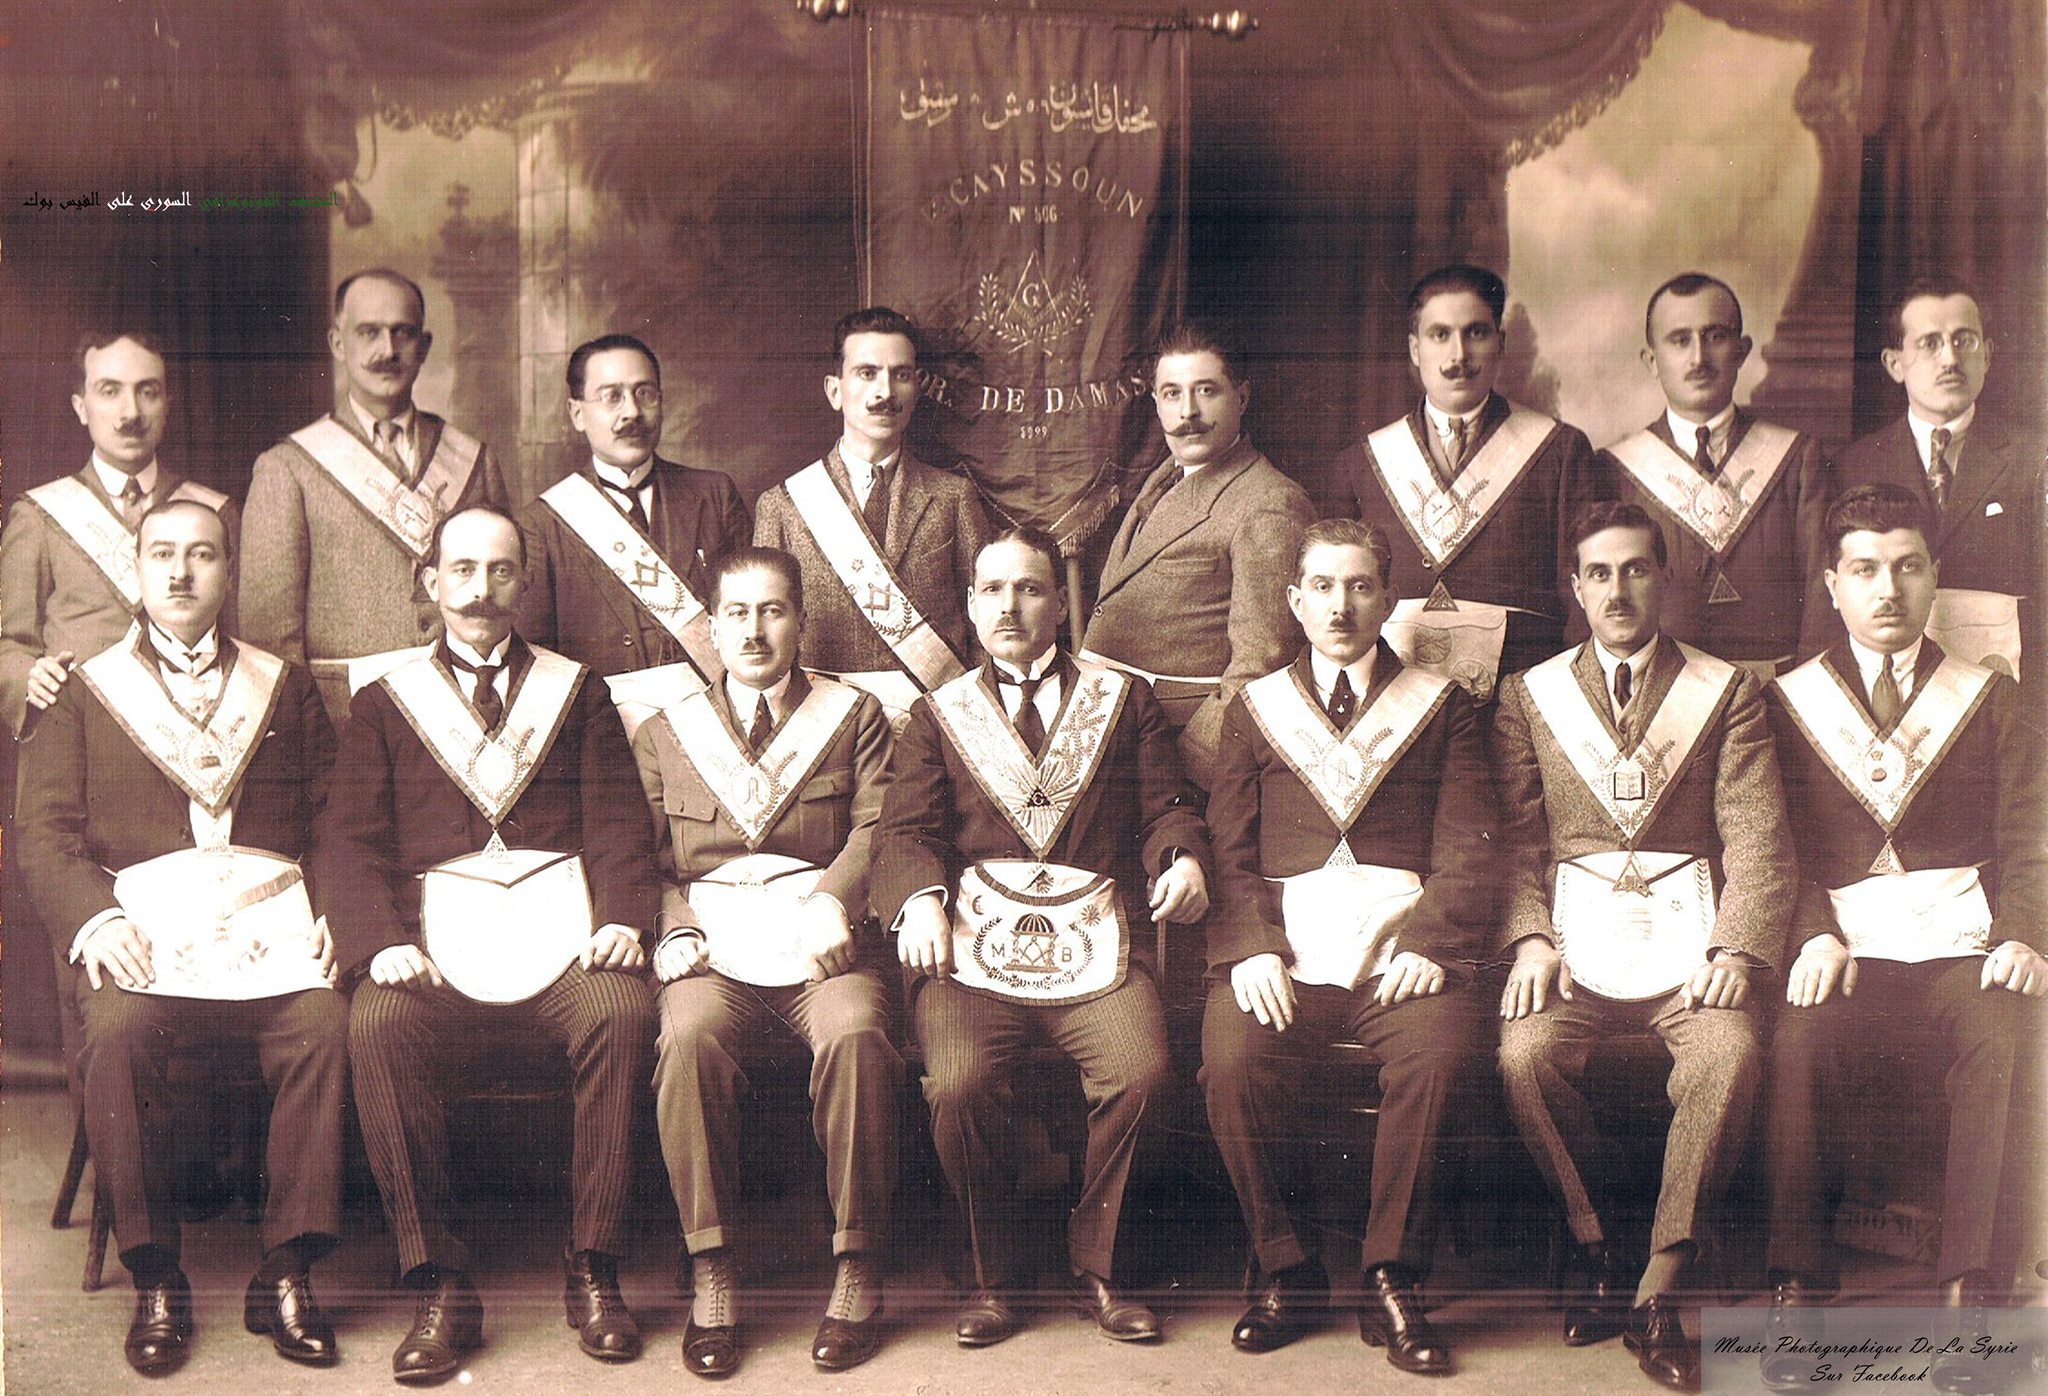 التاريخ السوري المعاصر - أعضاء في محفل قاسيون الماسوني بدمشق في العشرينيات